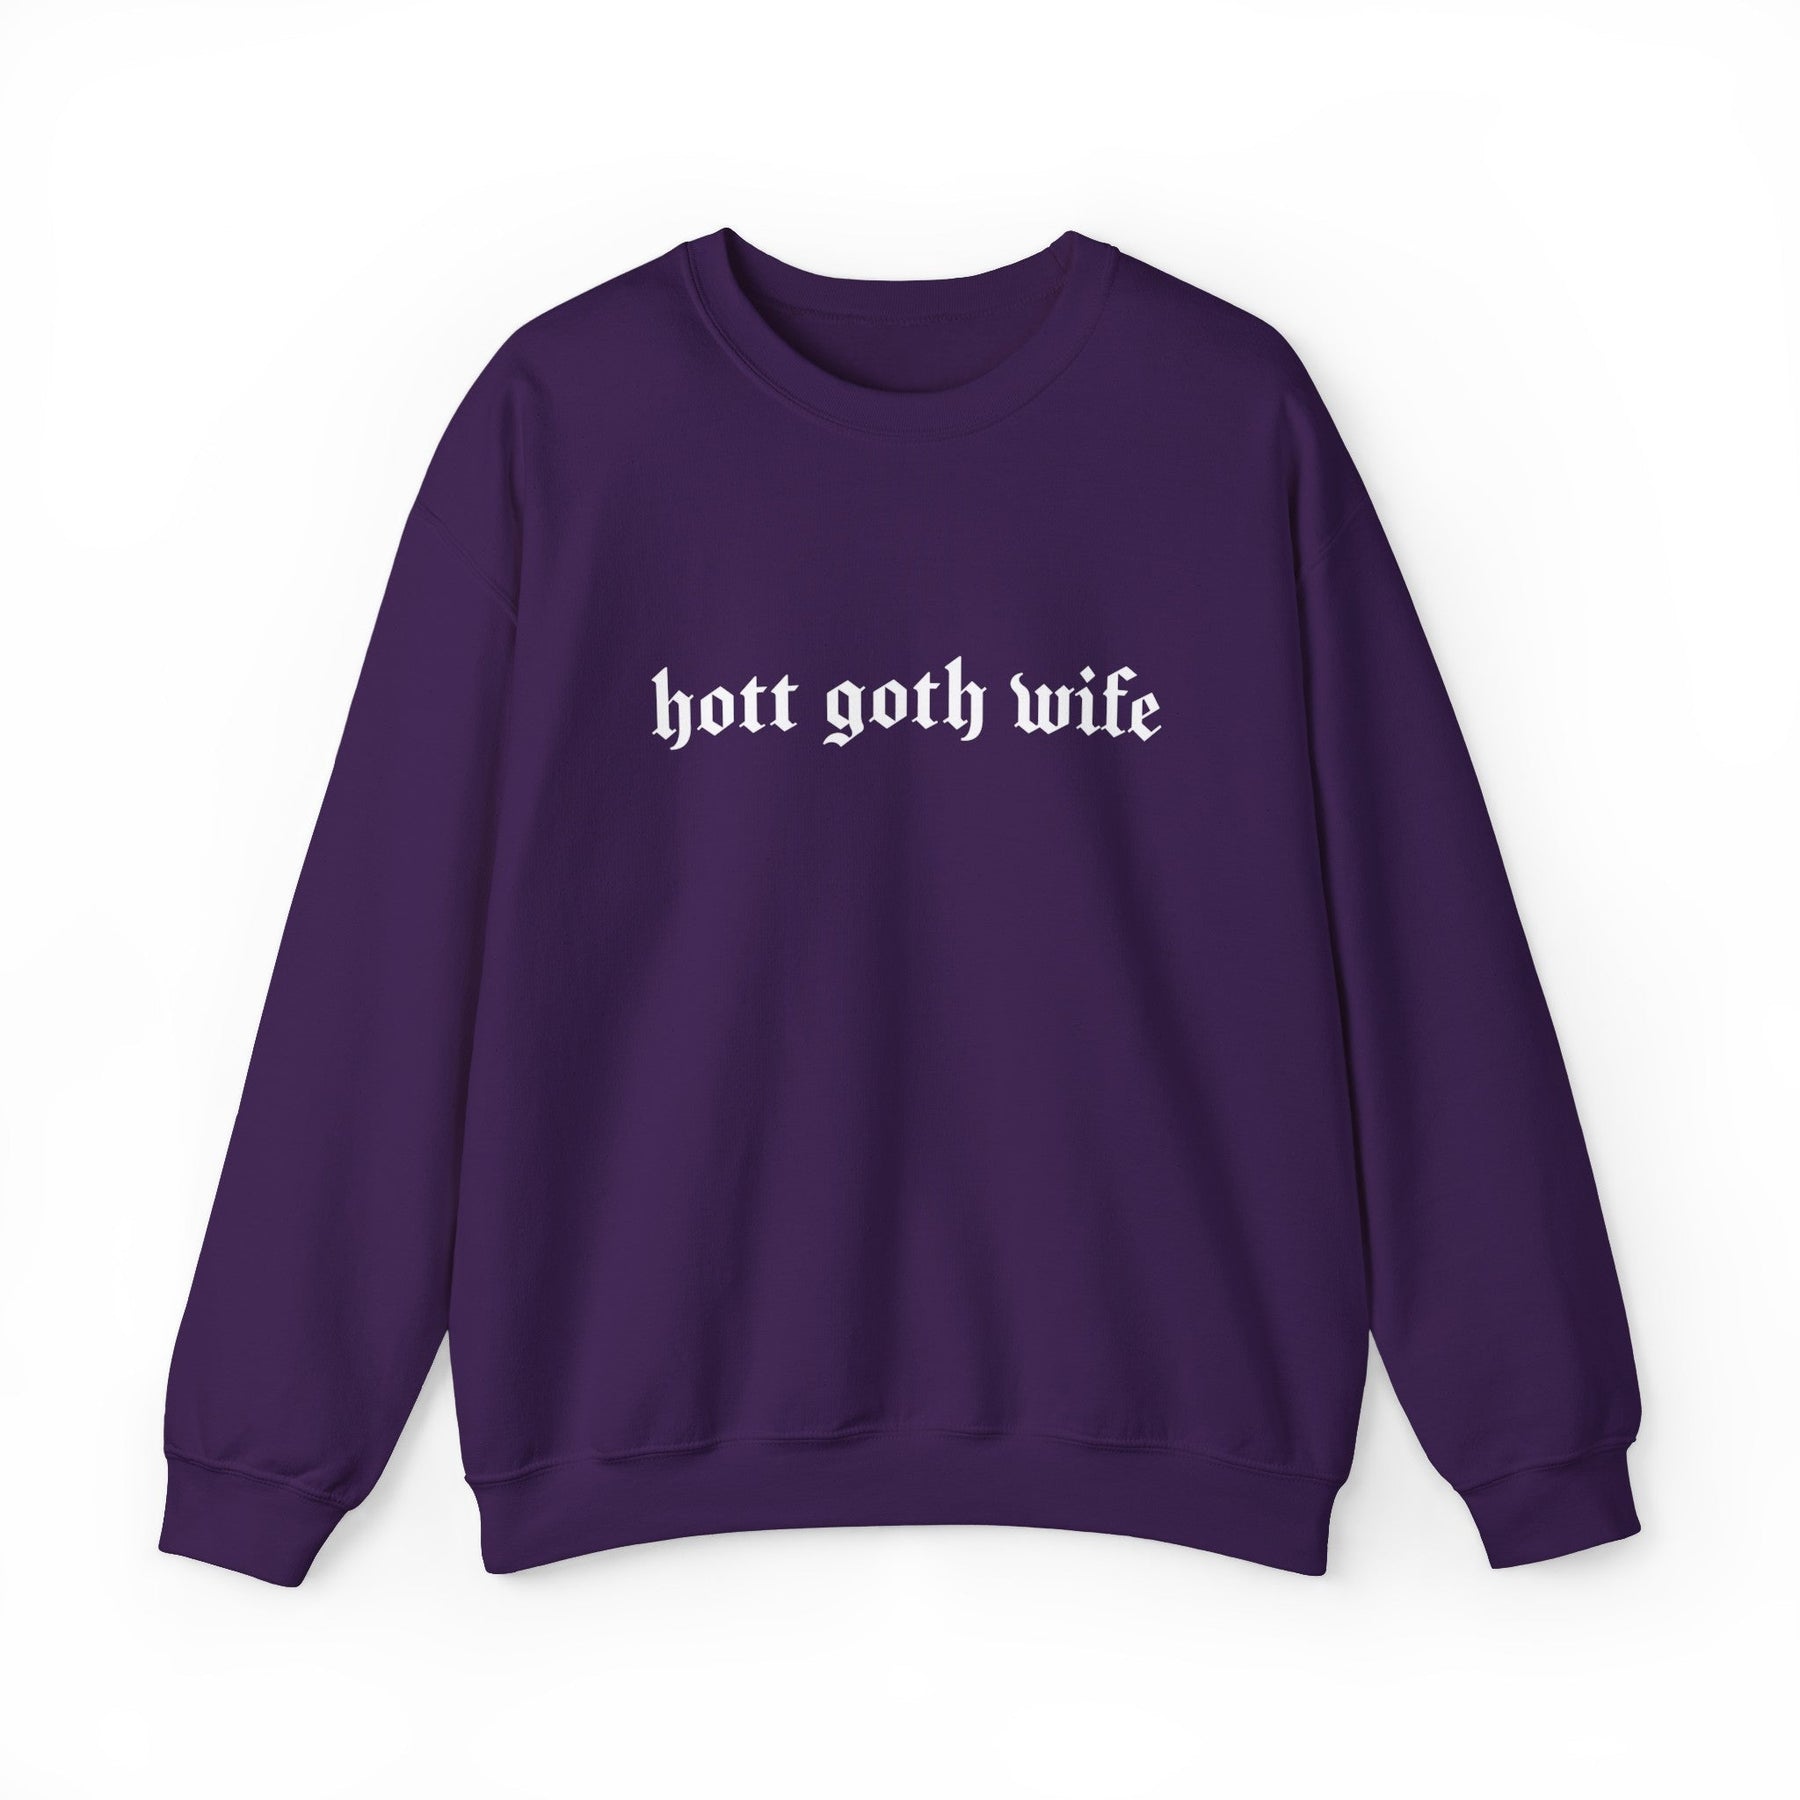 Hott Goth Wife Long Sleeve Crew Neck Sweatshirt - Goth Cloth Co.Sweatshirt13410902422626932057